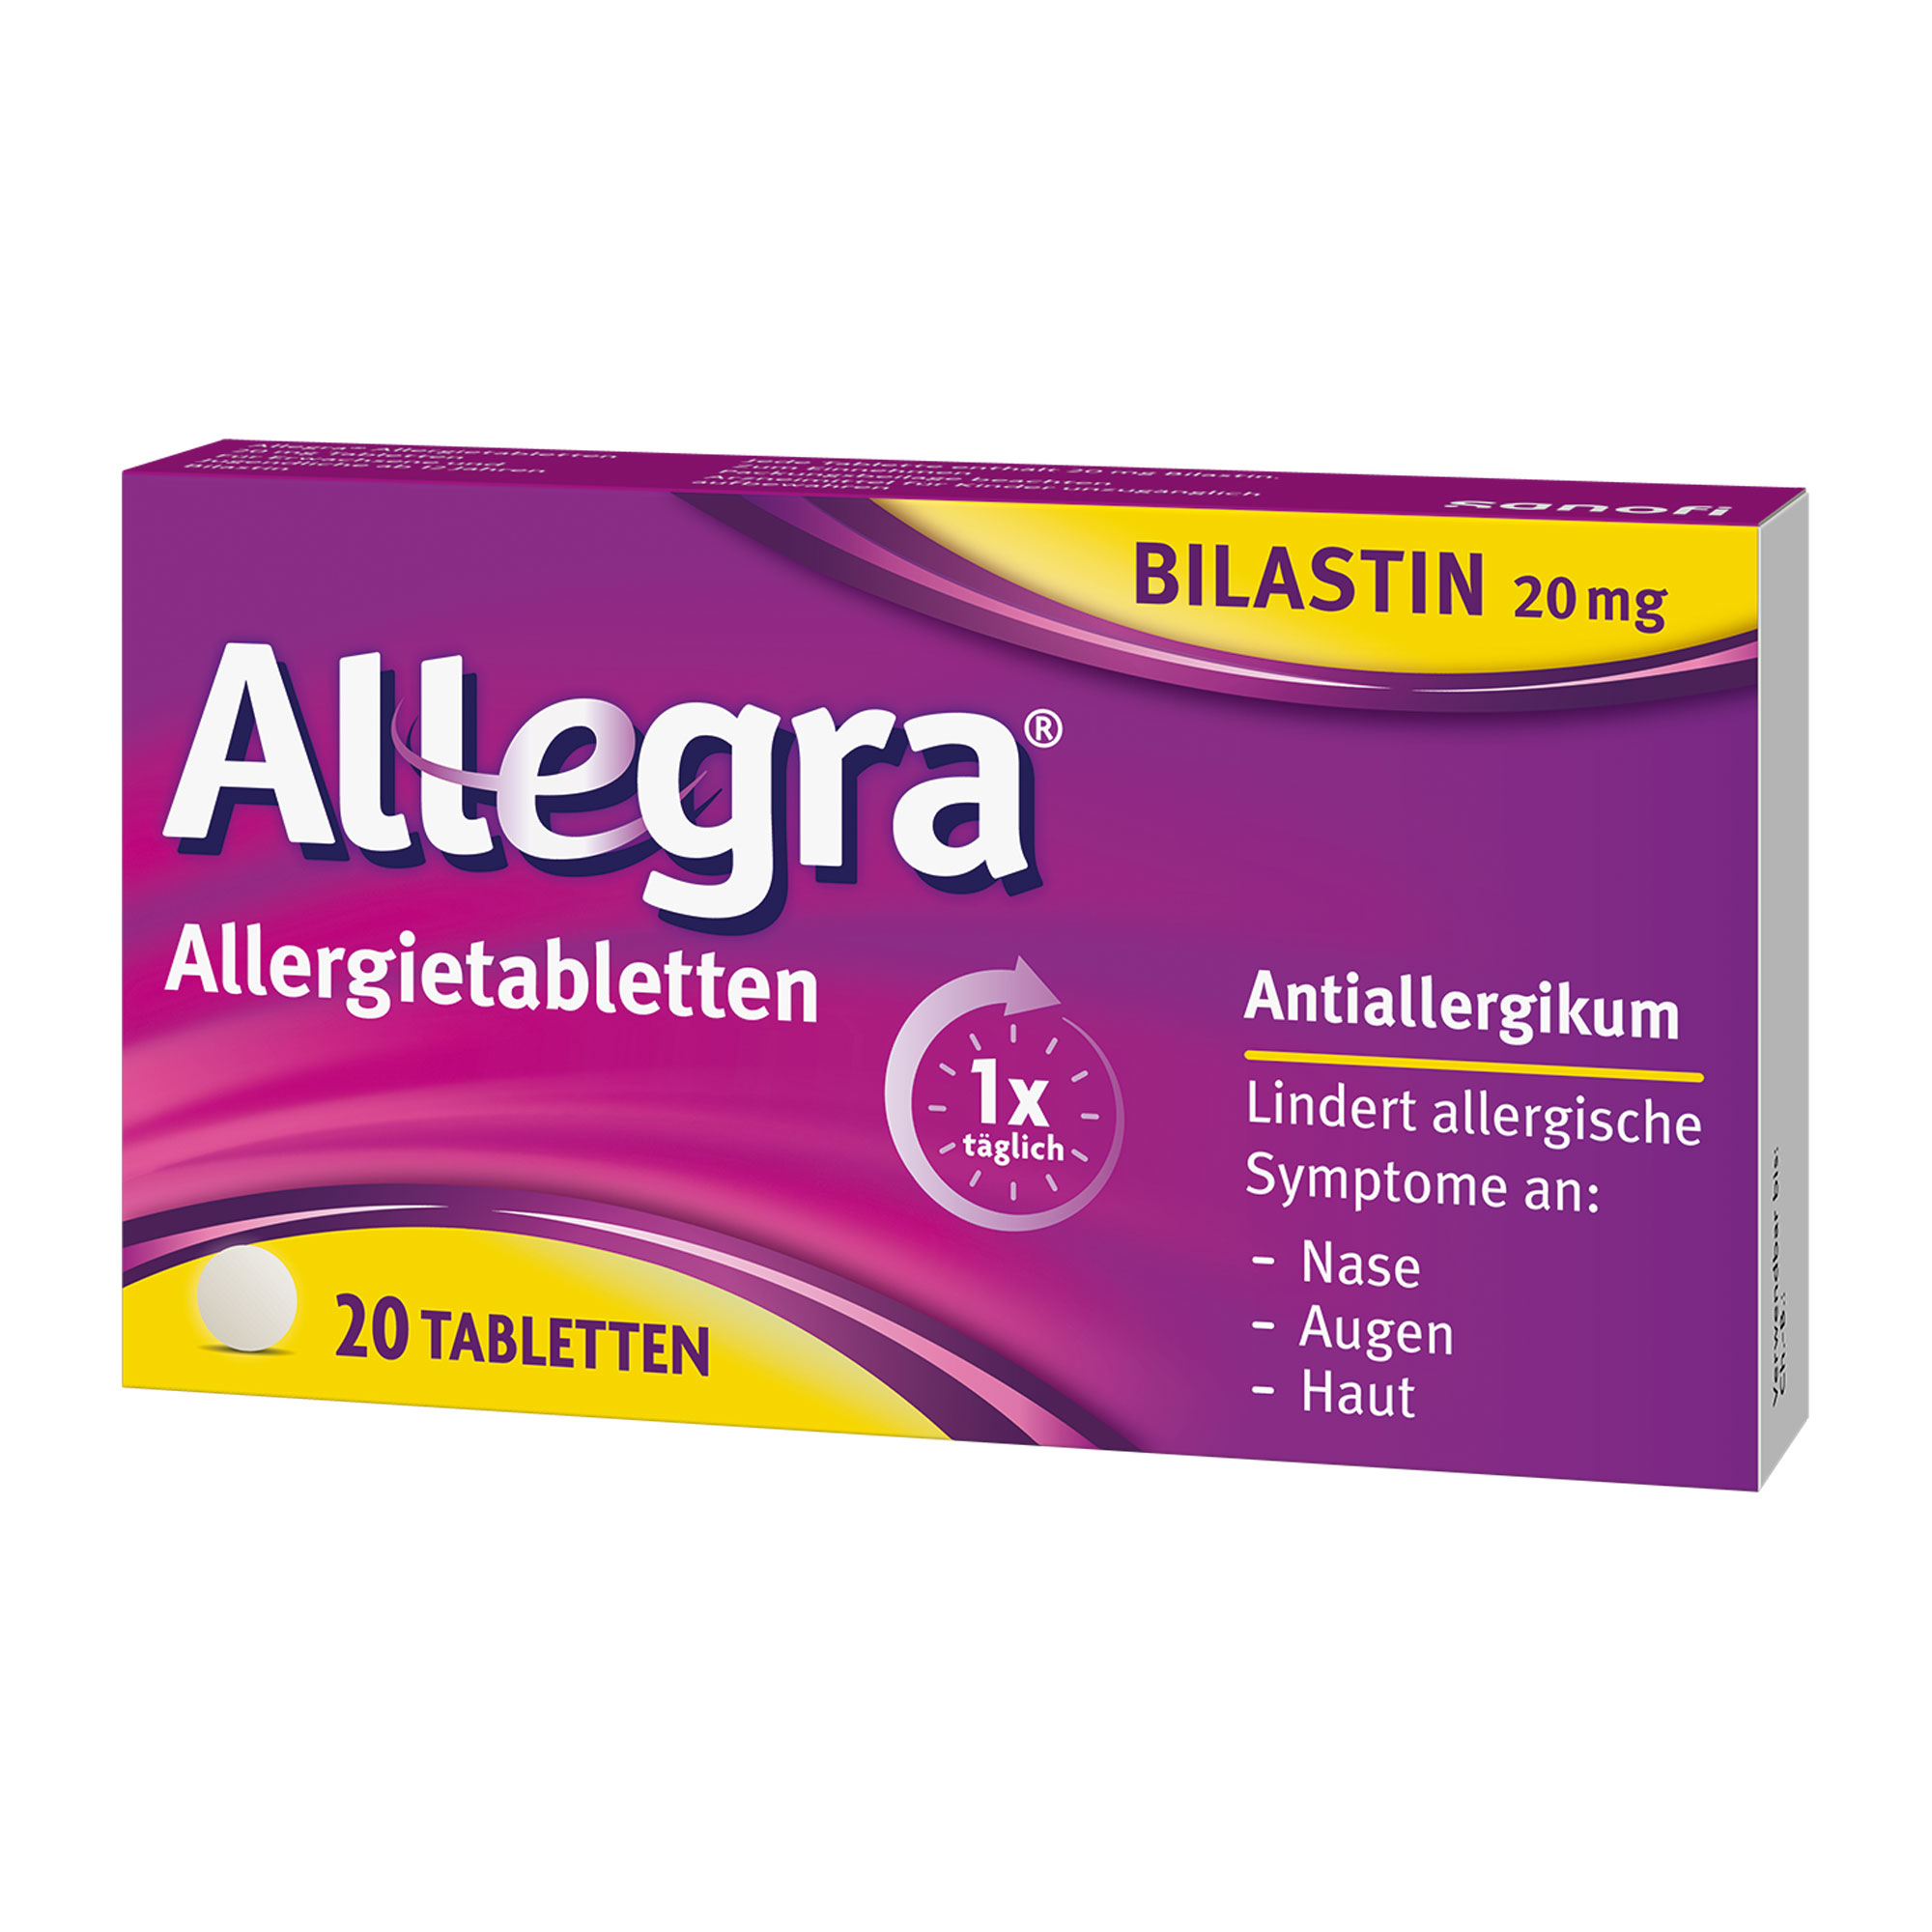 Zur Anwendung bei allergisch bedingten Symptome wie Niesen, tränende Augen sowie Juckreiz, Rötung und Quaddelbildung. Für Kinder ab 12 Jahren und Erwachsene.